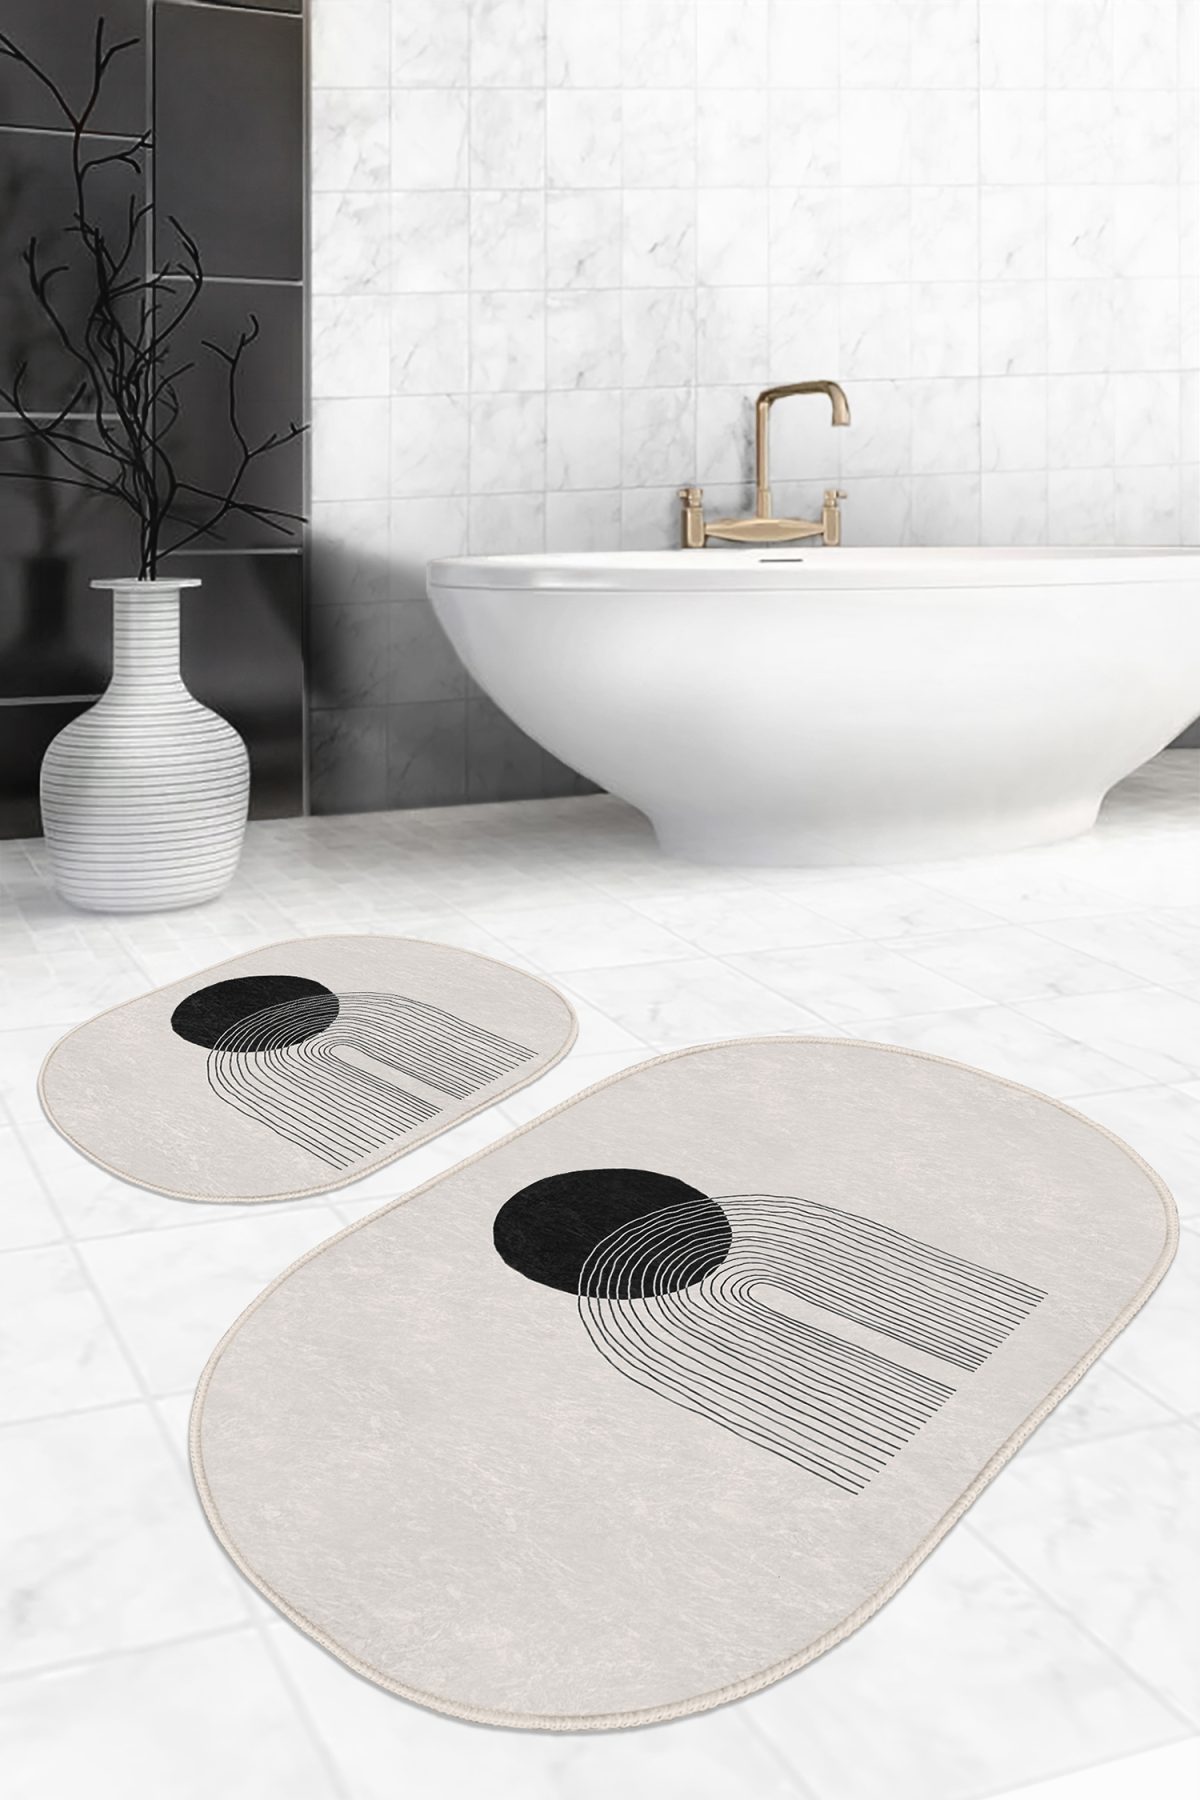 Krem Zeminli Çizgili Tasarım Dijital Baskılı 2'li Oval Kaymaz Tabanlı Banyo & Mutfak Paspas Takımı Realhomes